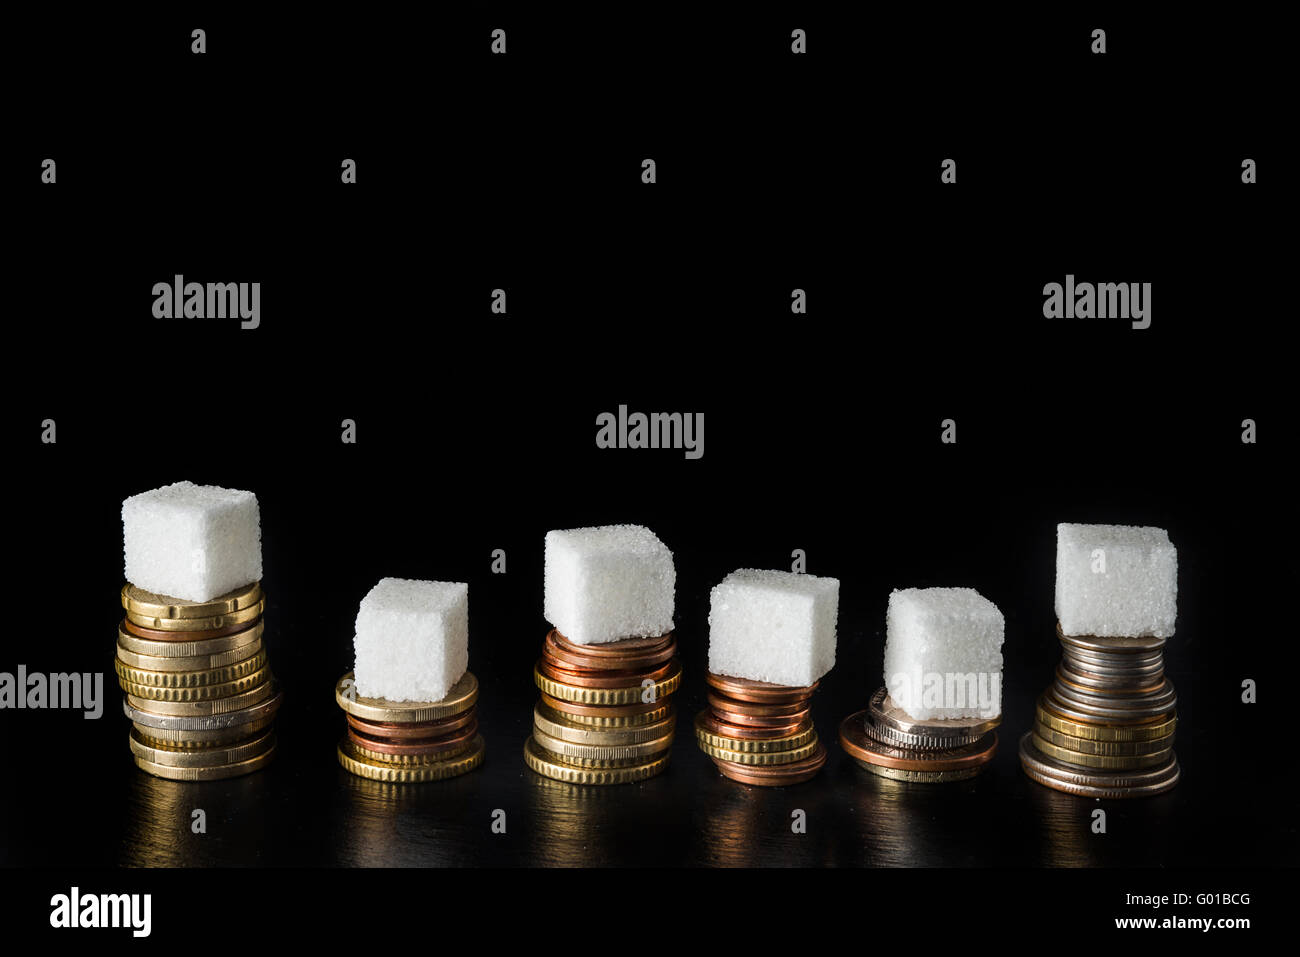 Des piles de pièces de monnaie avec des morceaux de sucre et des bouteilles remplies de sucre sur le dessus, symbolisant l'impôt sur le sucre, sur fond d'ardoise noire Banque D'Images